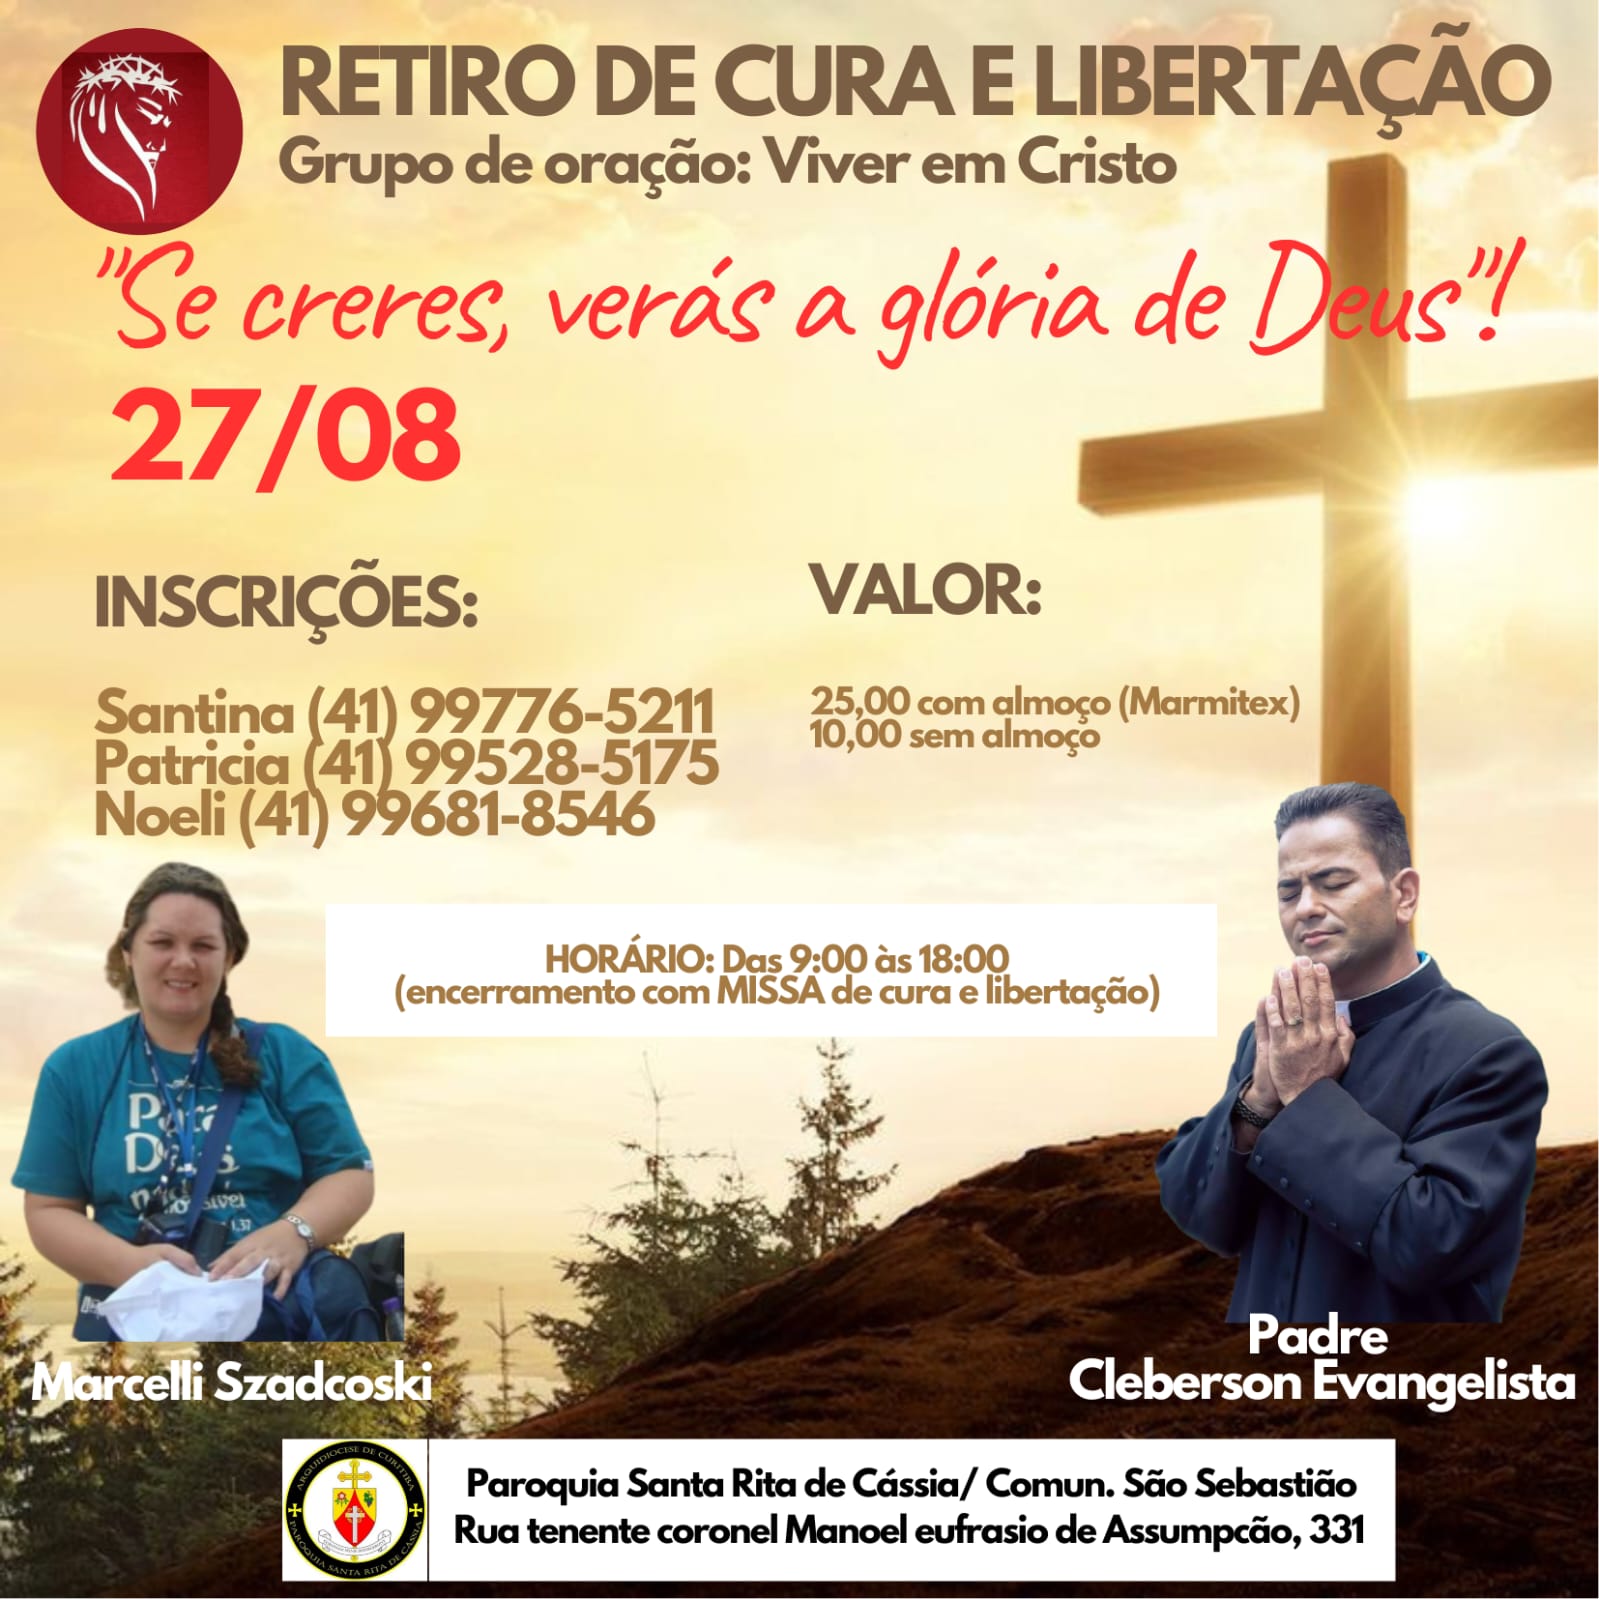 Retiro de Cura e Libertação no Tatuquara - Curitiba